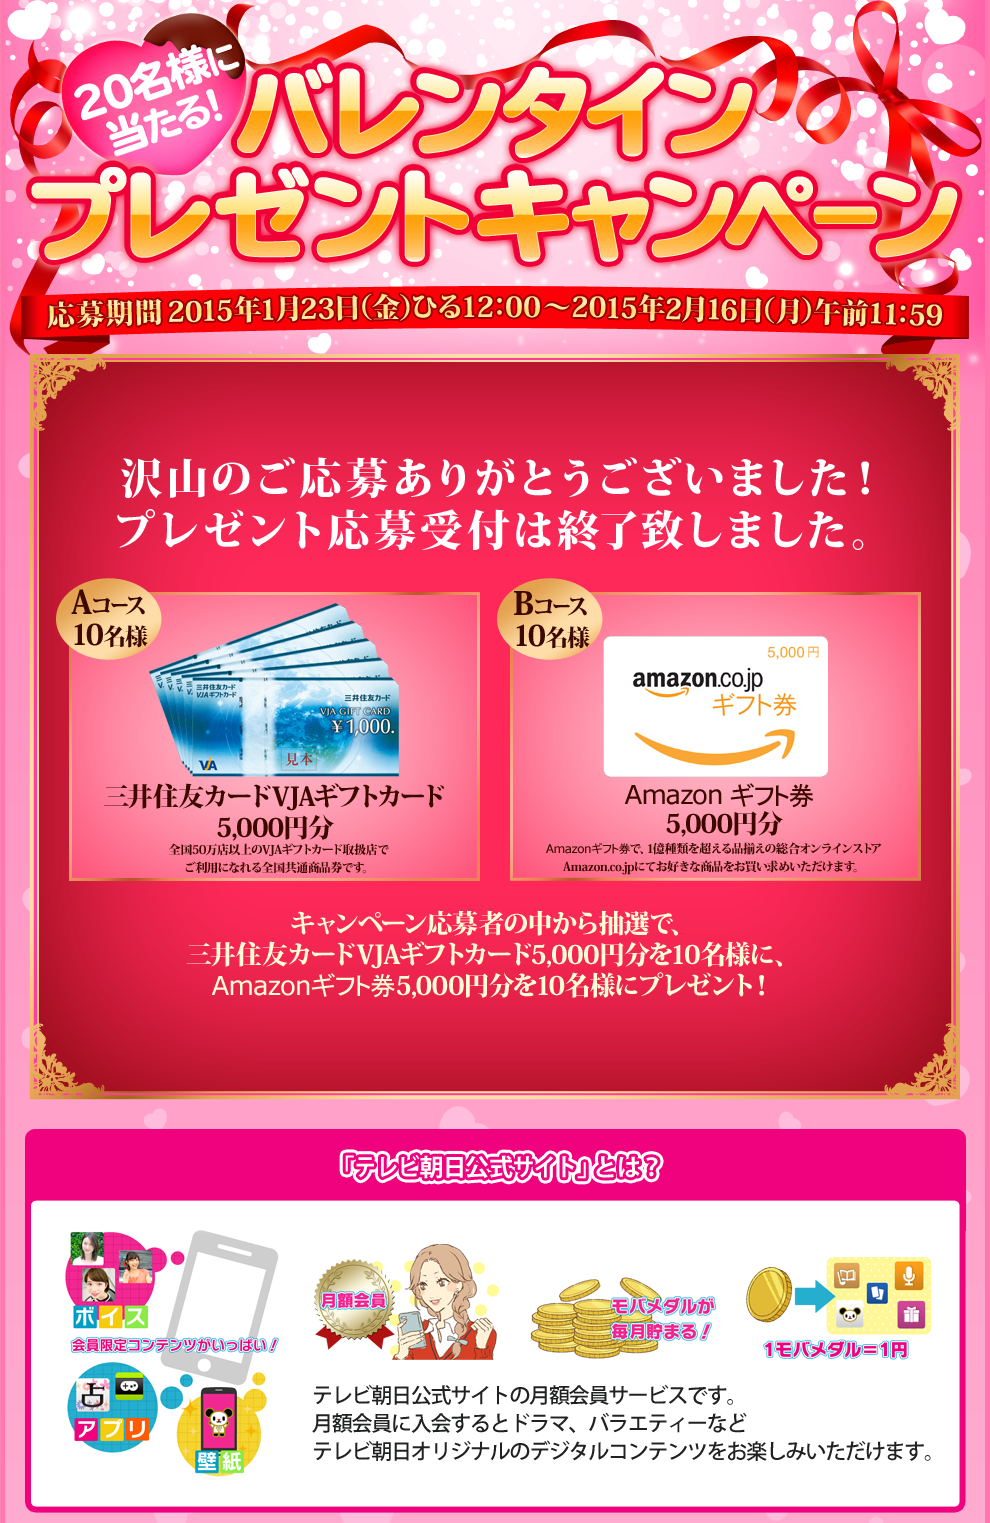 Aコース 三井住友カードVJAギフトカード5,000円分 10名様。Bコース Amazonギフト券5,000円分 10名様。